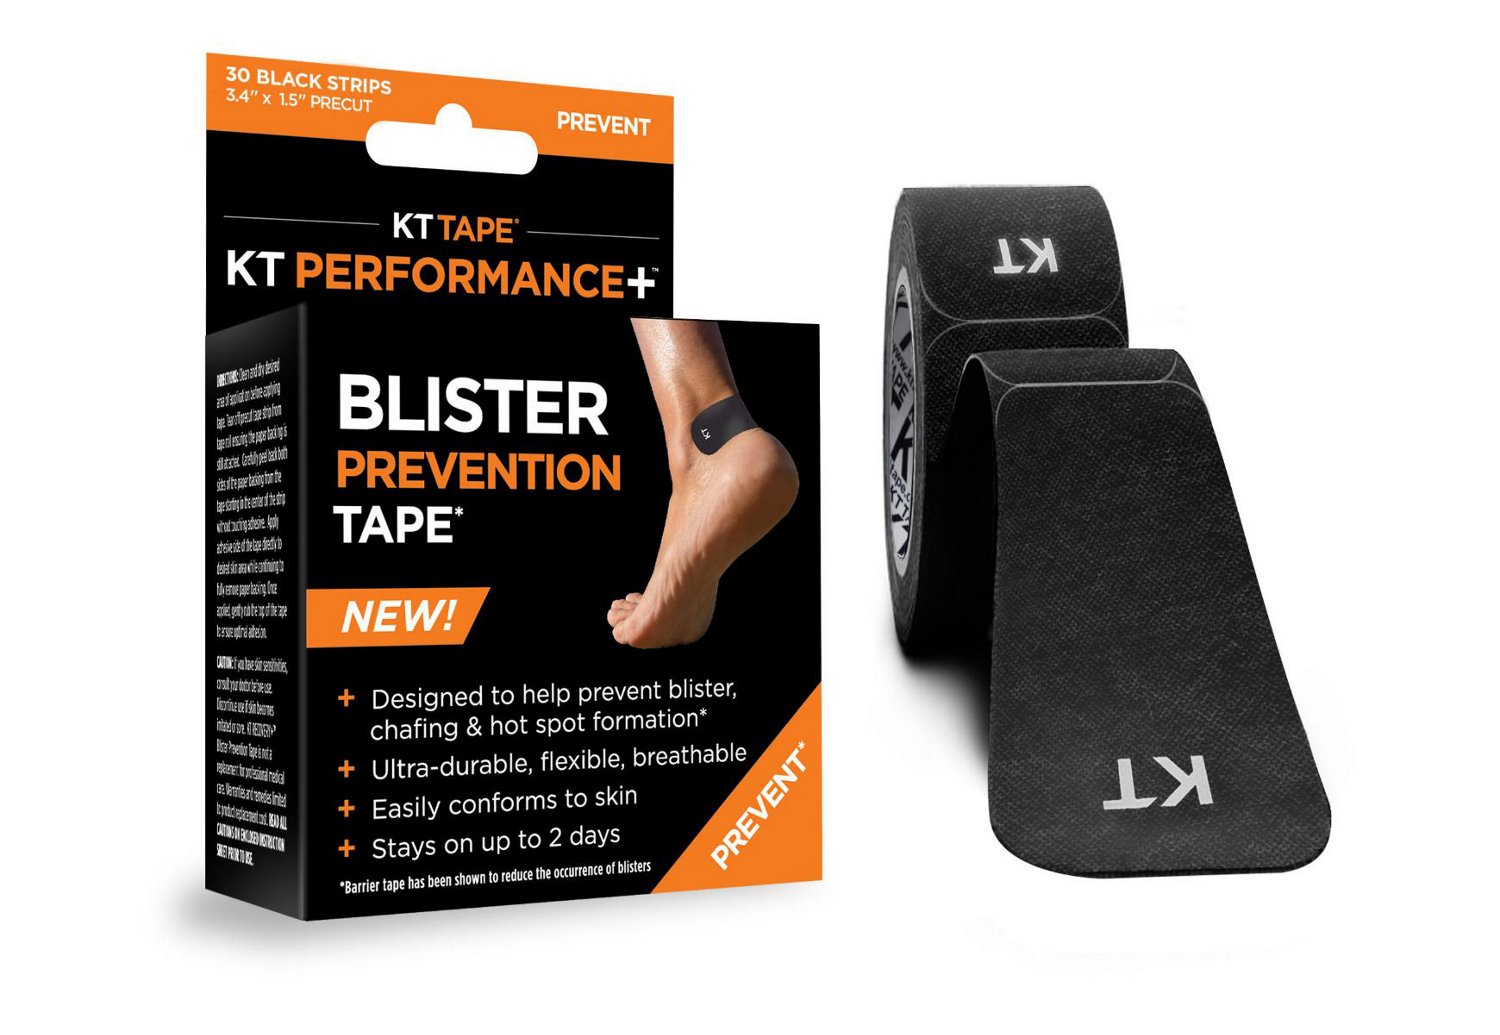 KT Tape Blister Prevention Tape